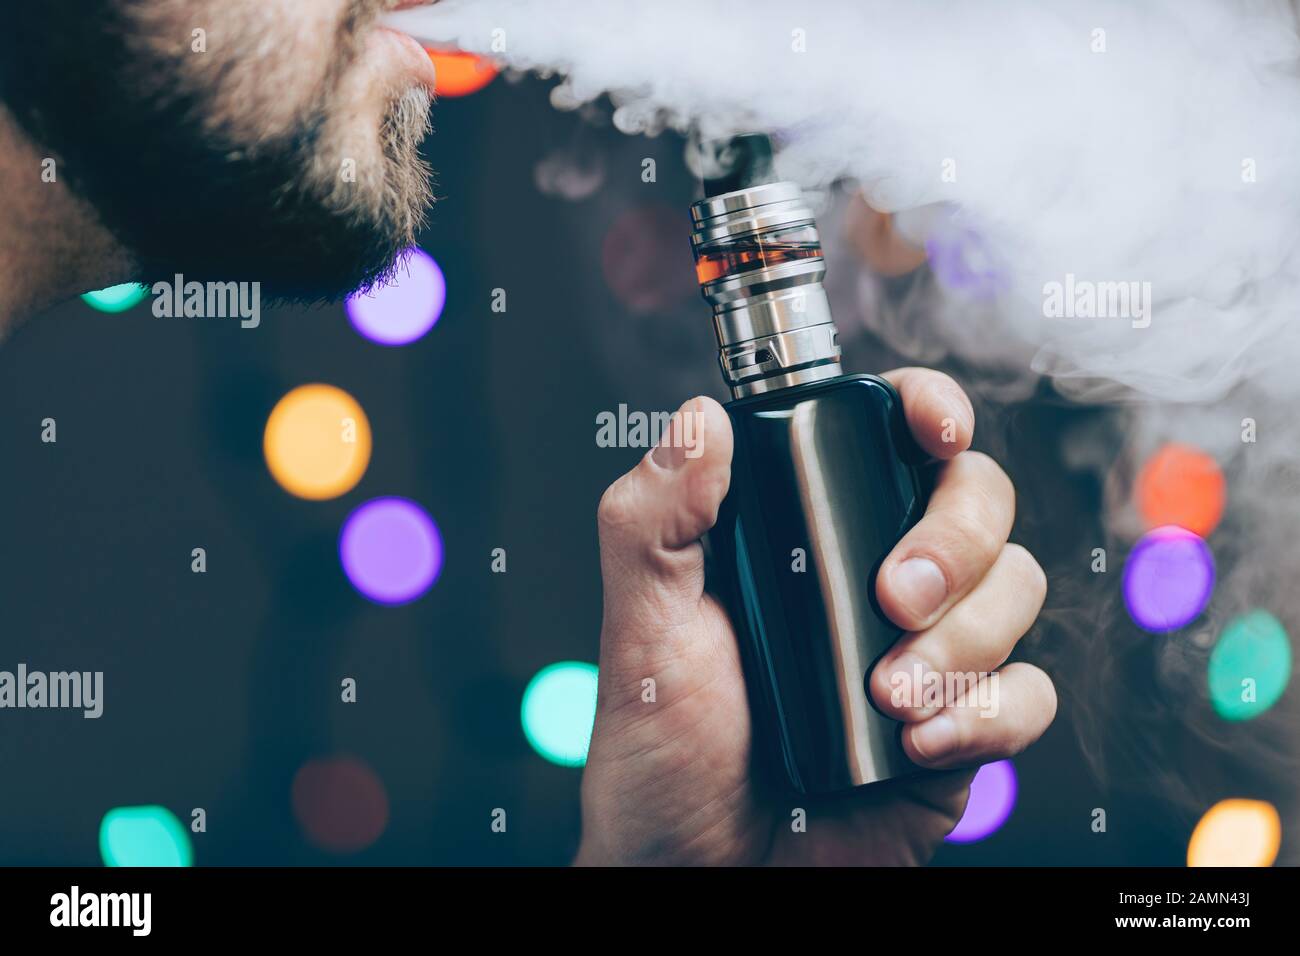 Vaping aromatisierte E-Flüssigkeit aus einer elektronischen Zigarette Stockfoto